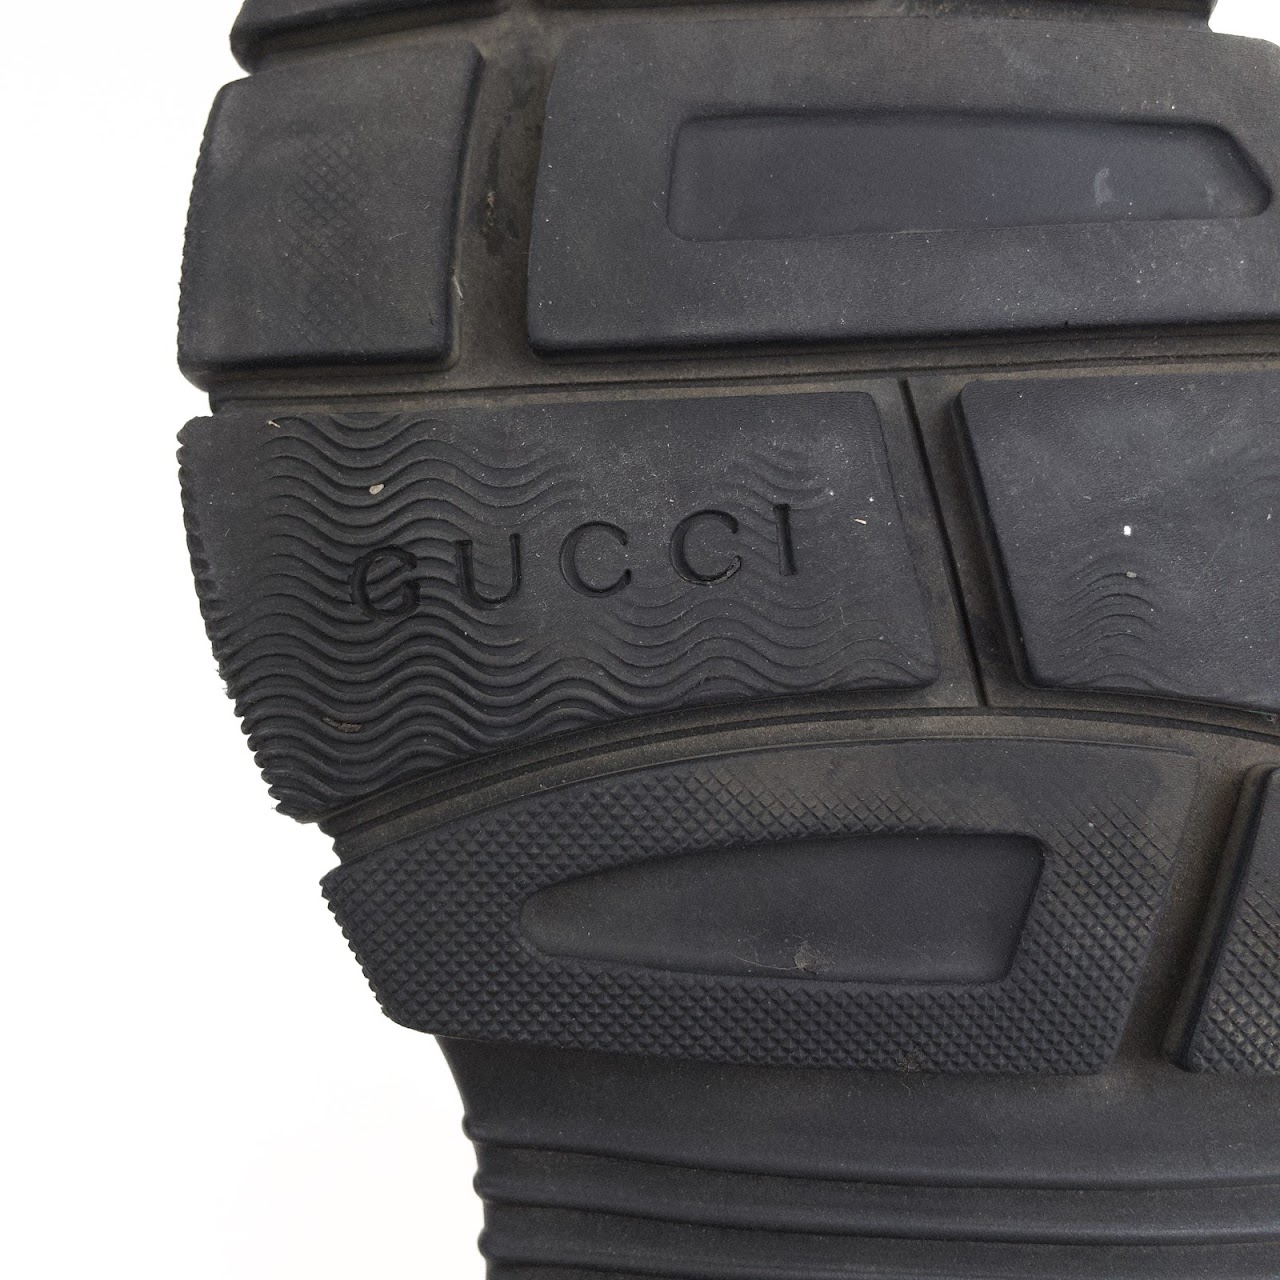 Gucci Aguru Jewel Sandal